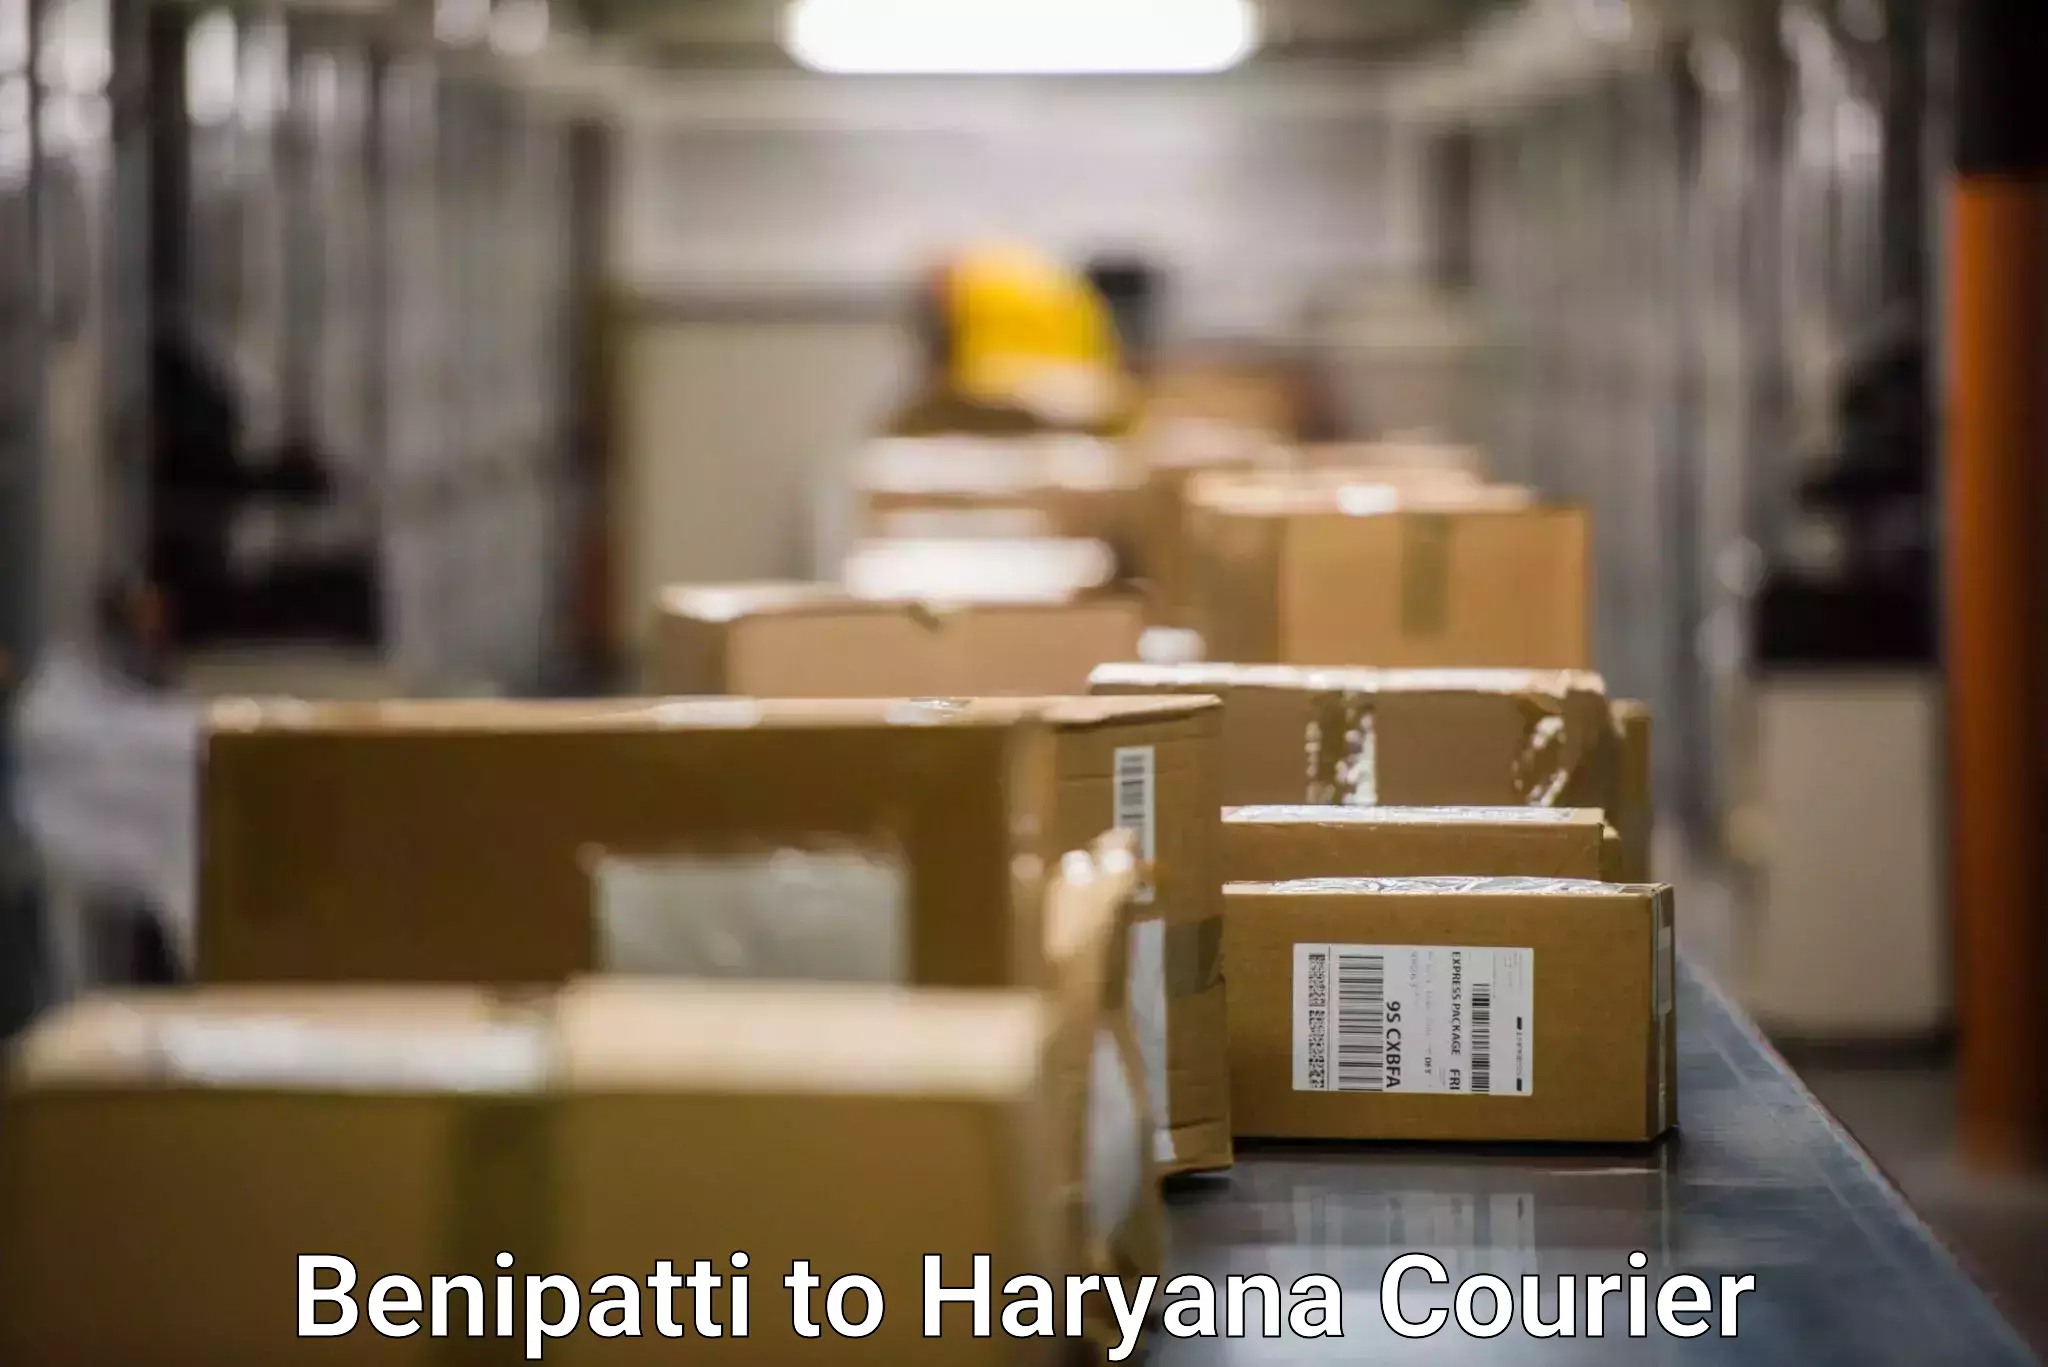 Customer-centric shipping Benipatti to Haryana